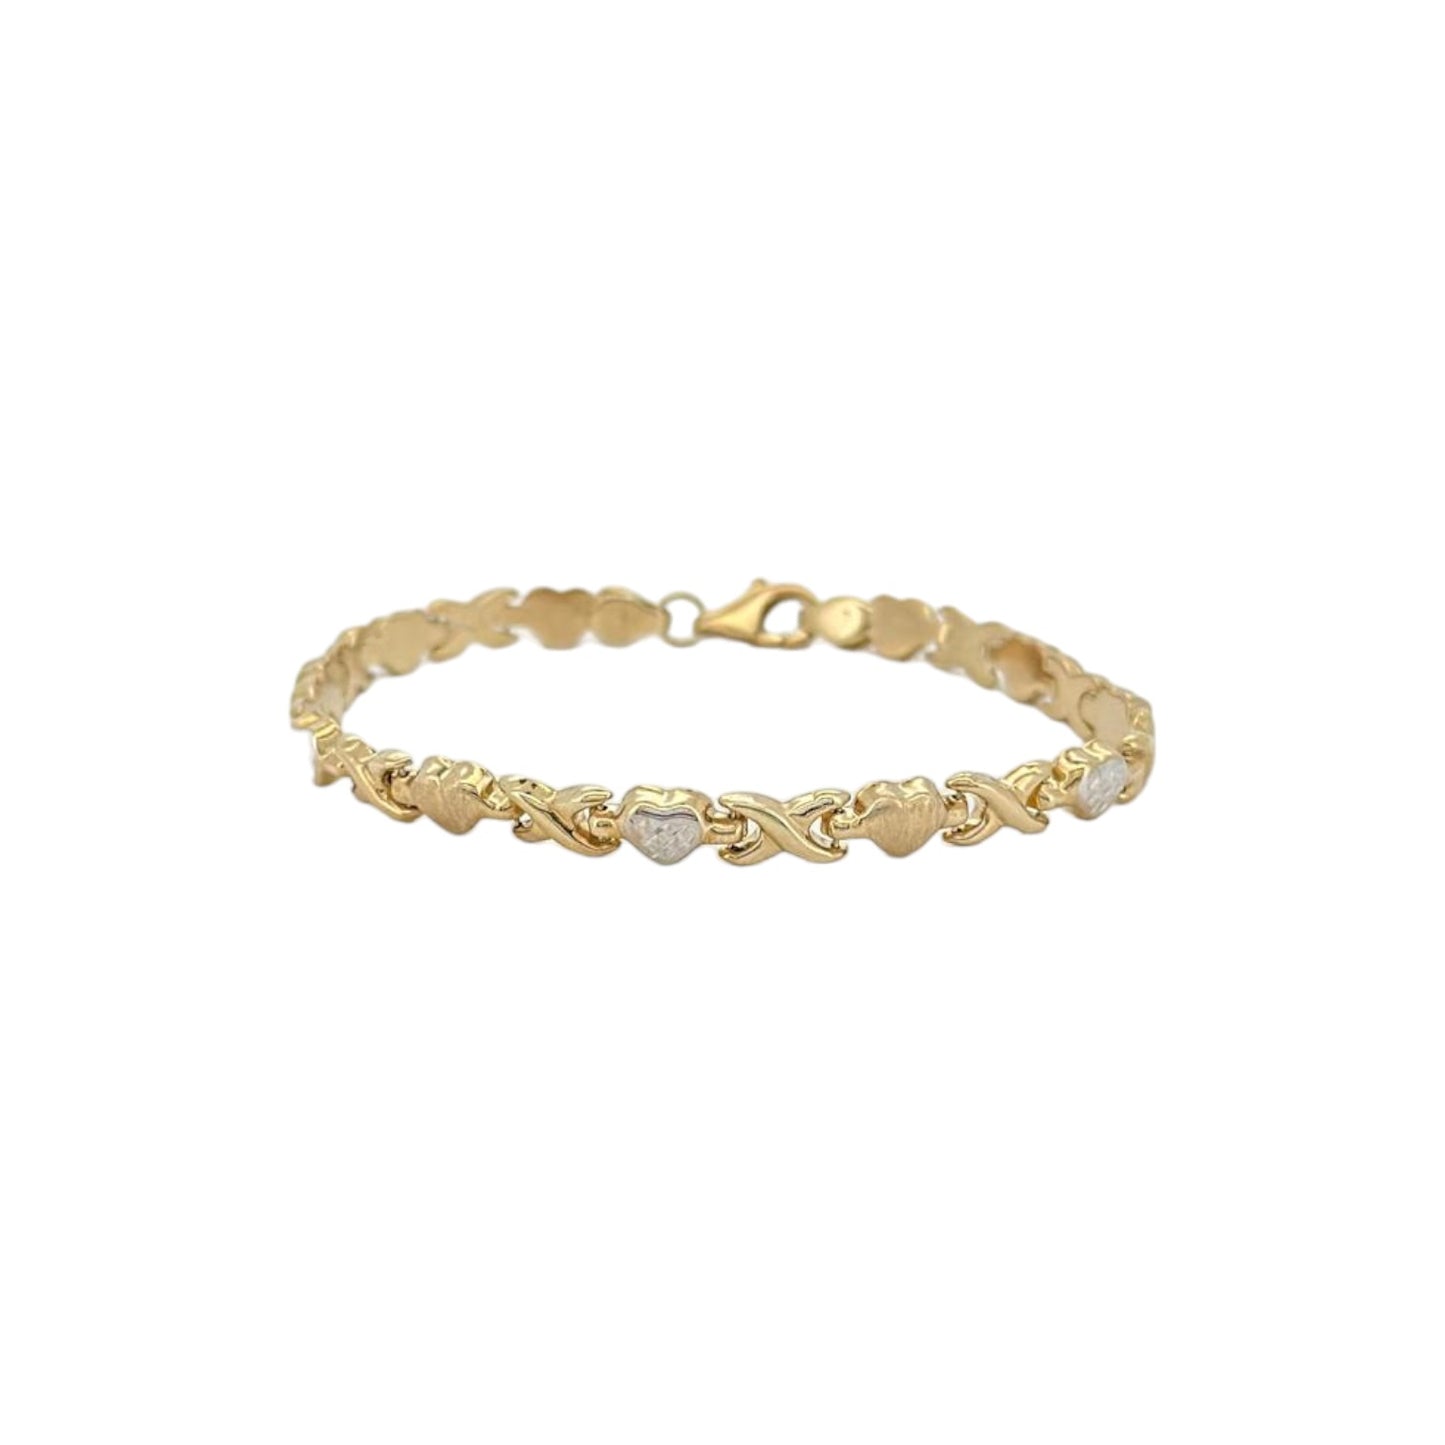 Heart kisses bracelet - 10k yellow gold